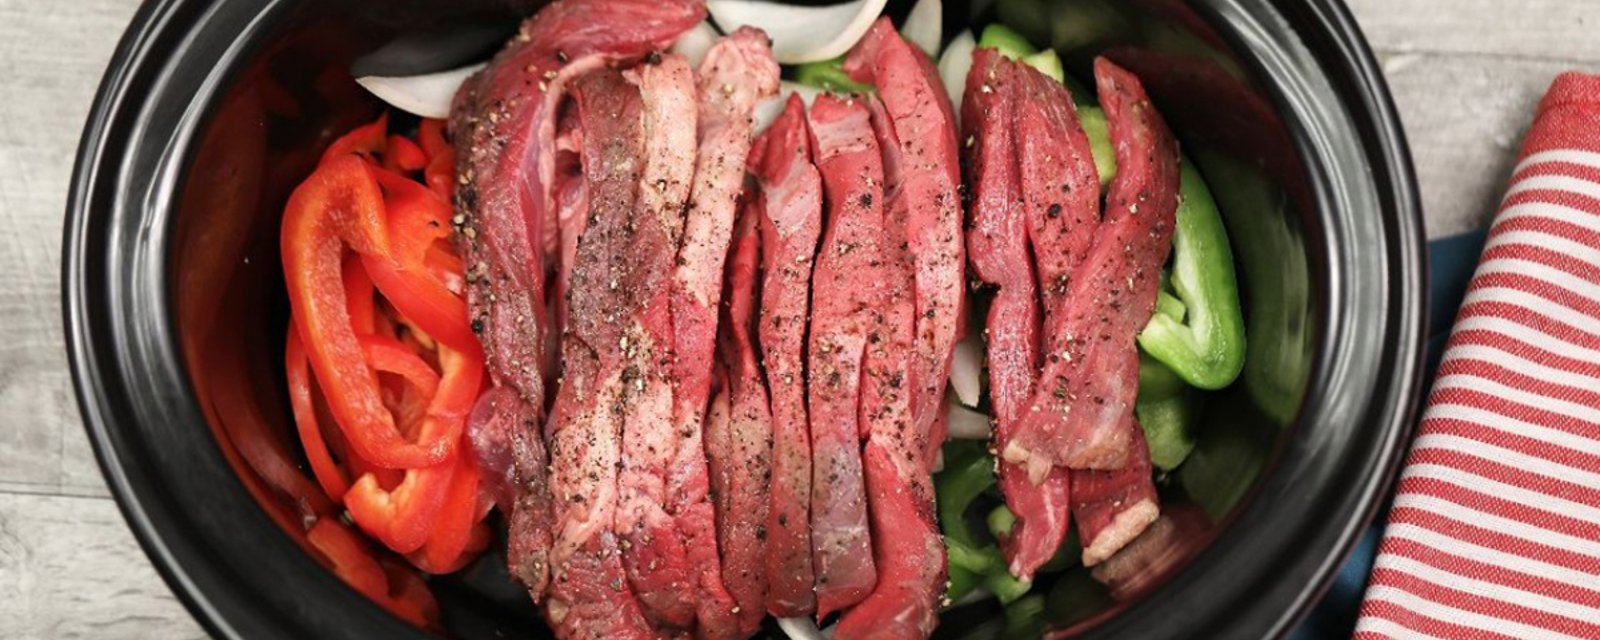 Des poivrons, des lanières de steak et un “pepper steak” digne du resto grâce à votre mijoteuse!